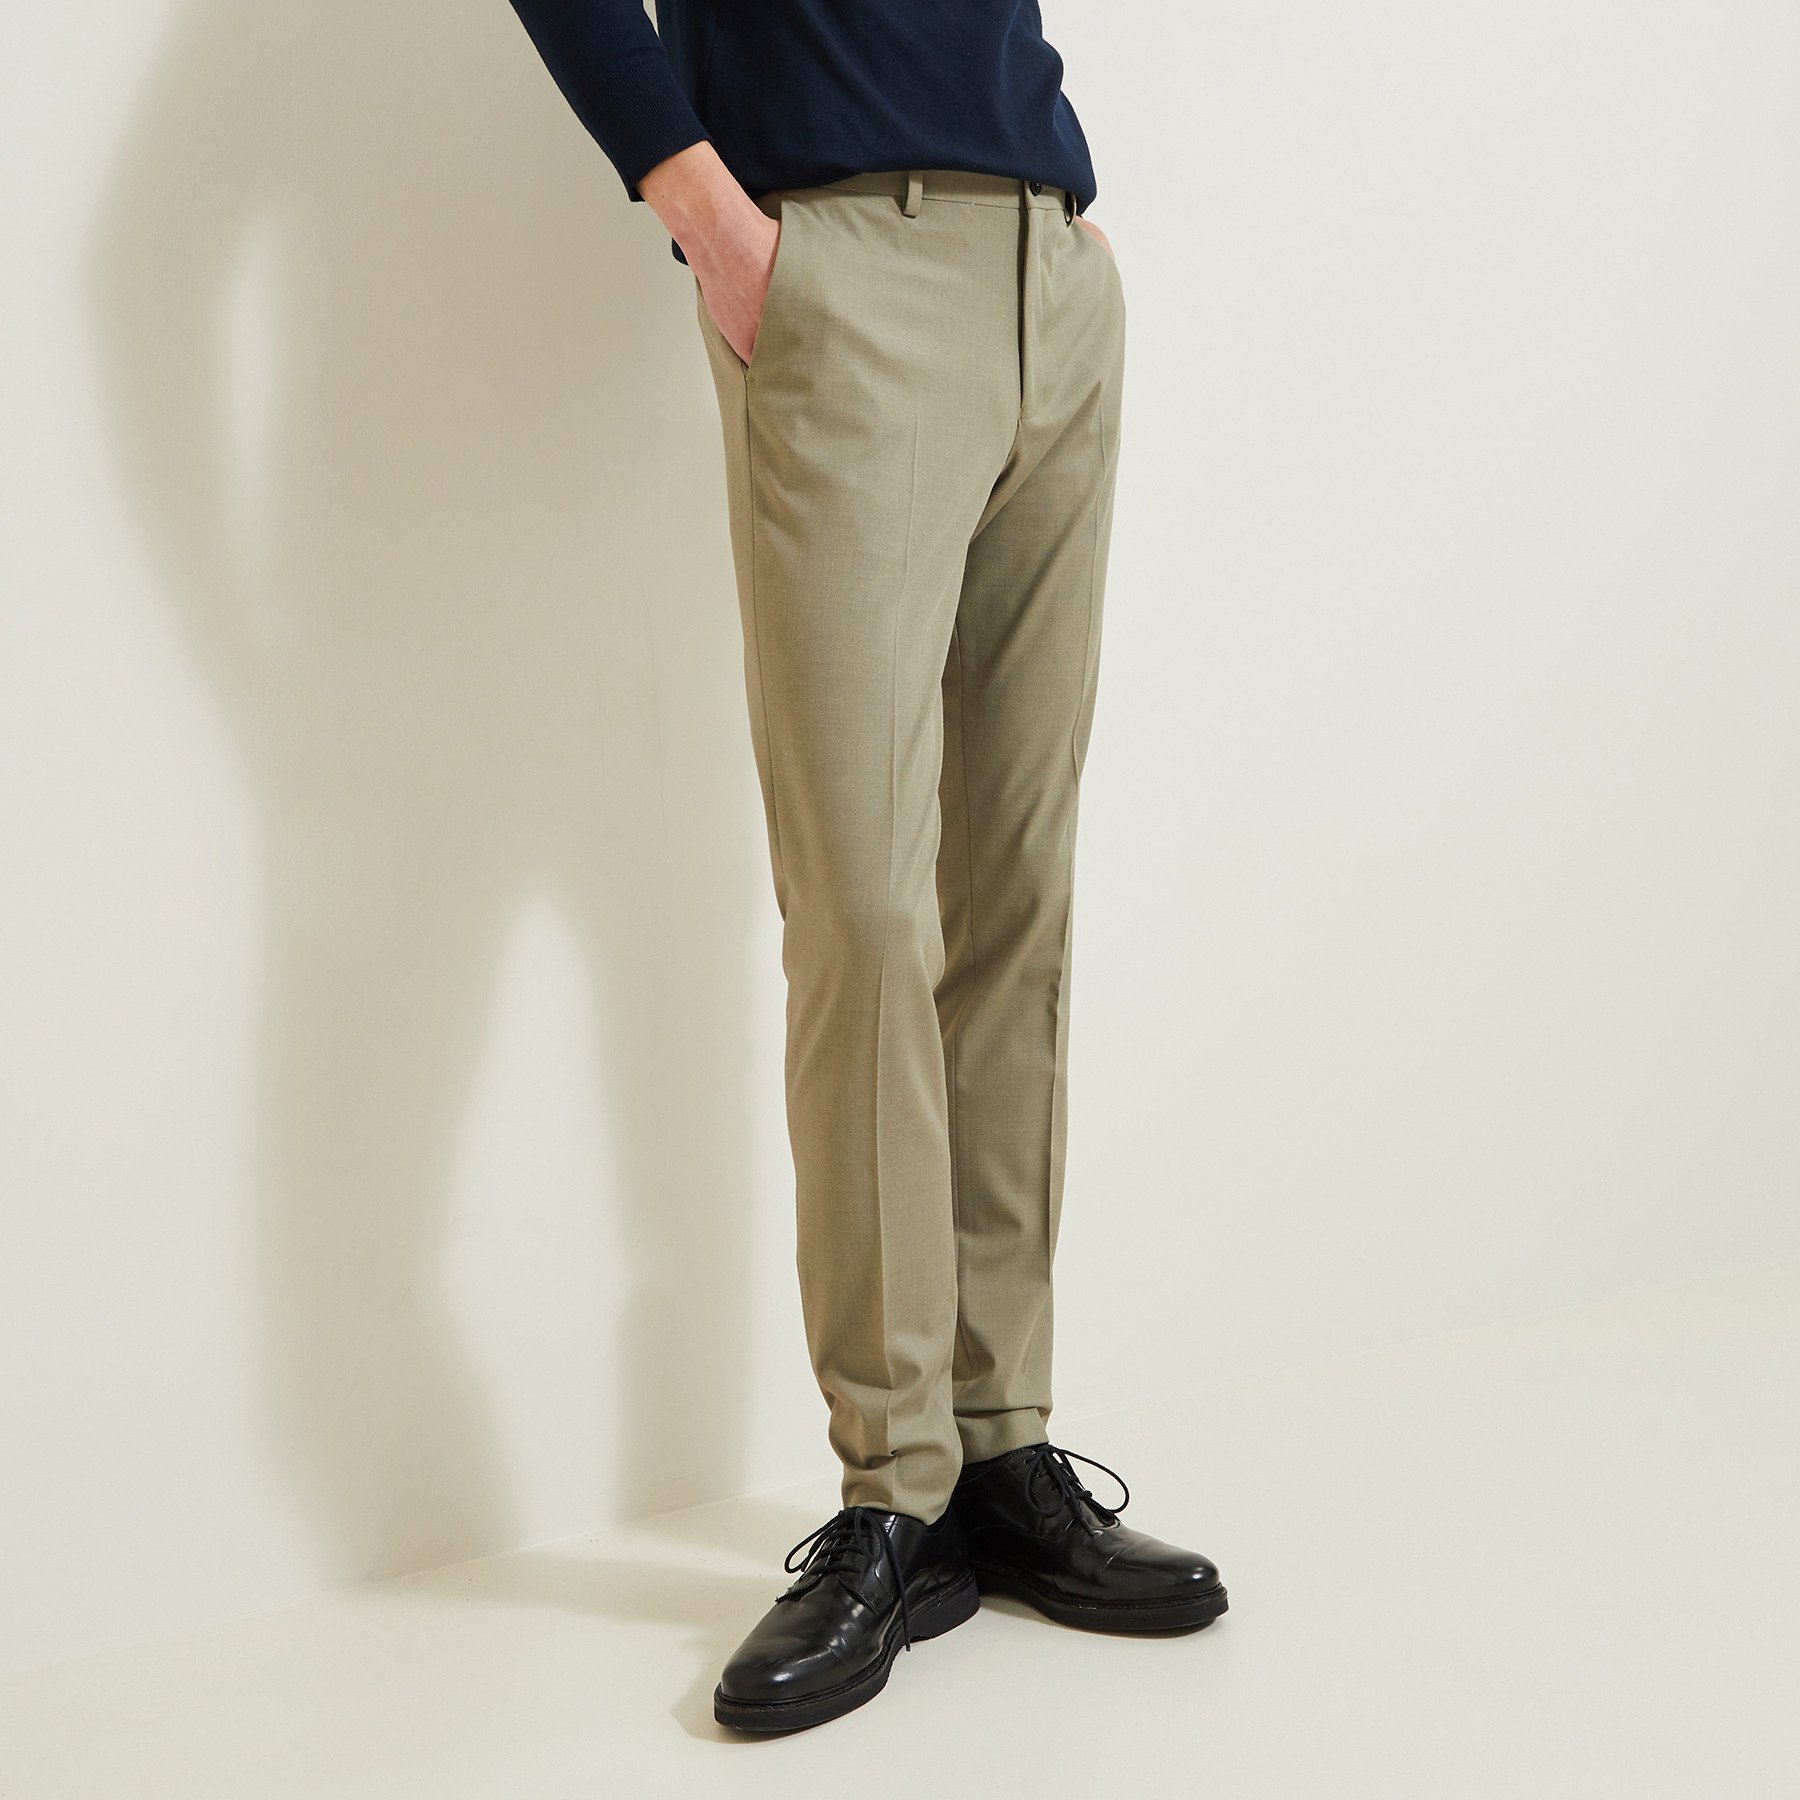 Pantalon de costume extra slim Vert/Kaki 36 65% Polyester, 30% Viscose, 5% Elasthanne Homme